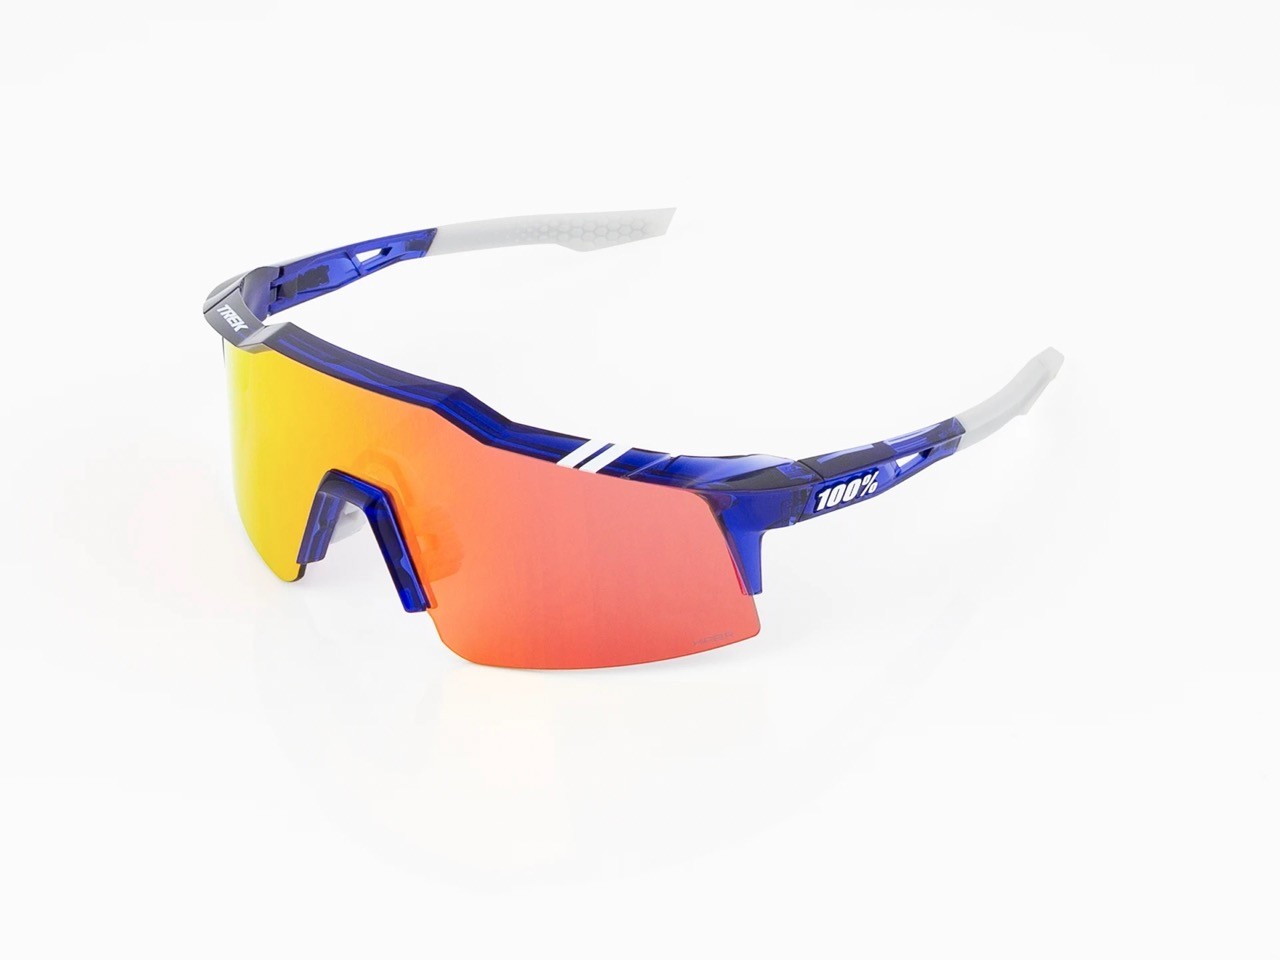 Sluneční brýle 100% Speedcraft SL se skly HiPER, týmová edice Trek